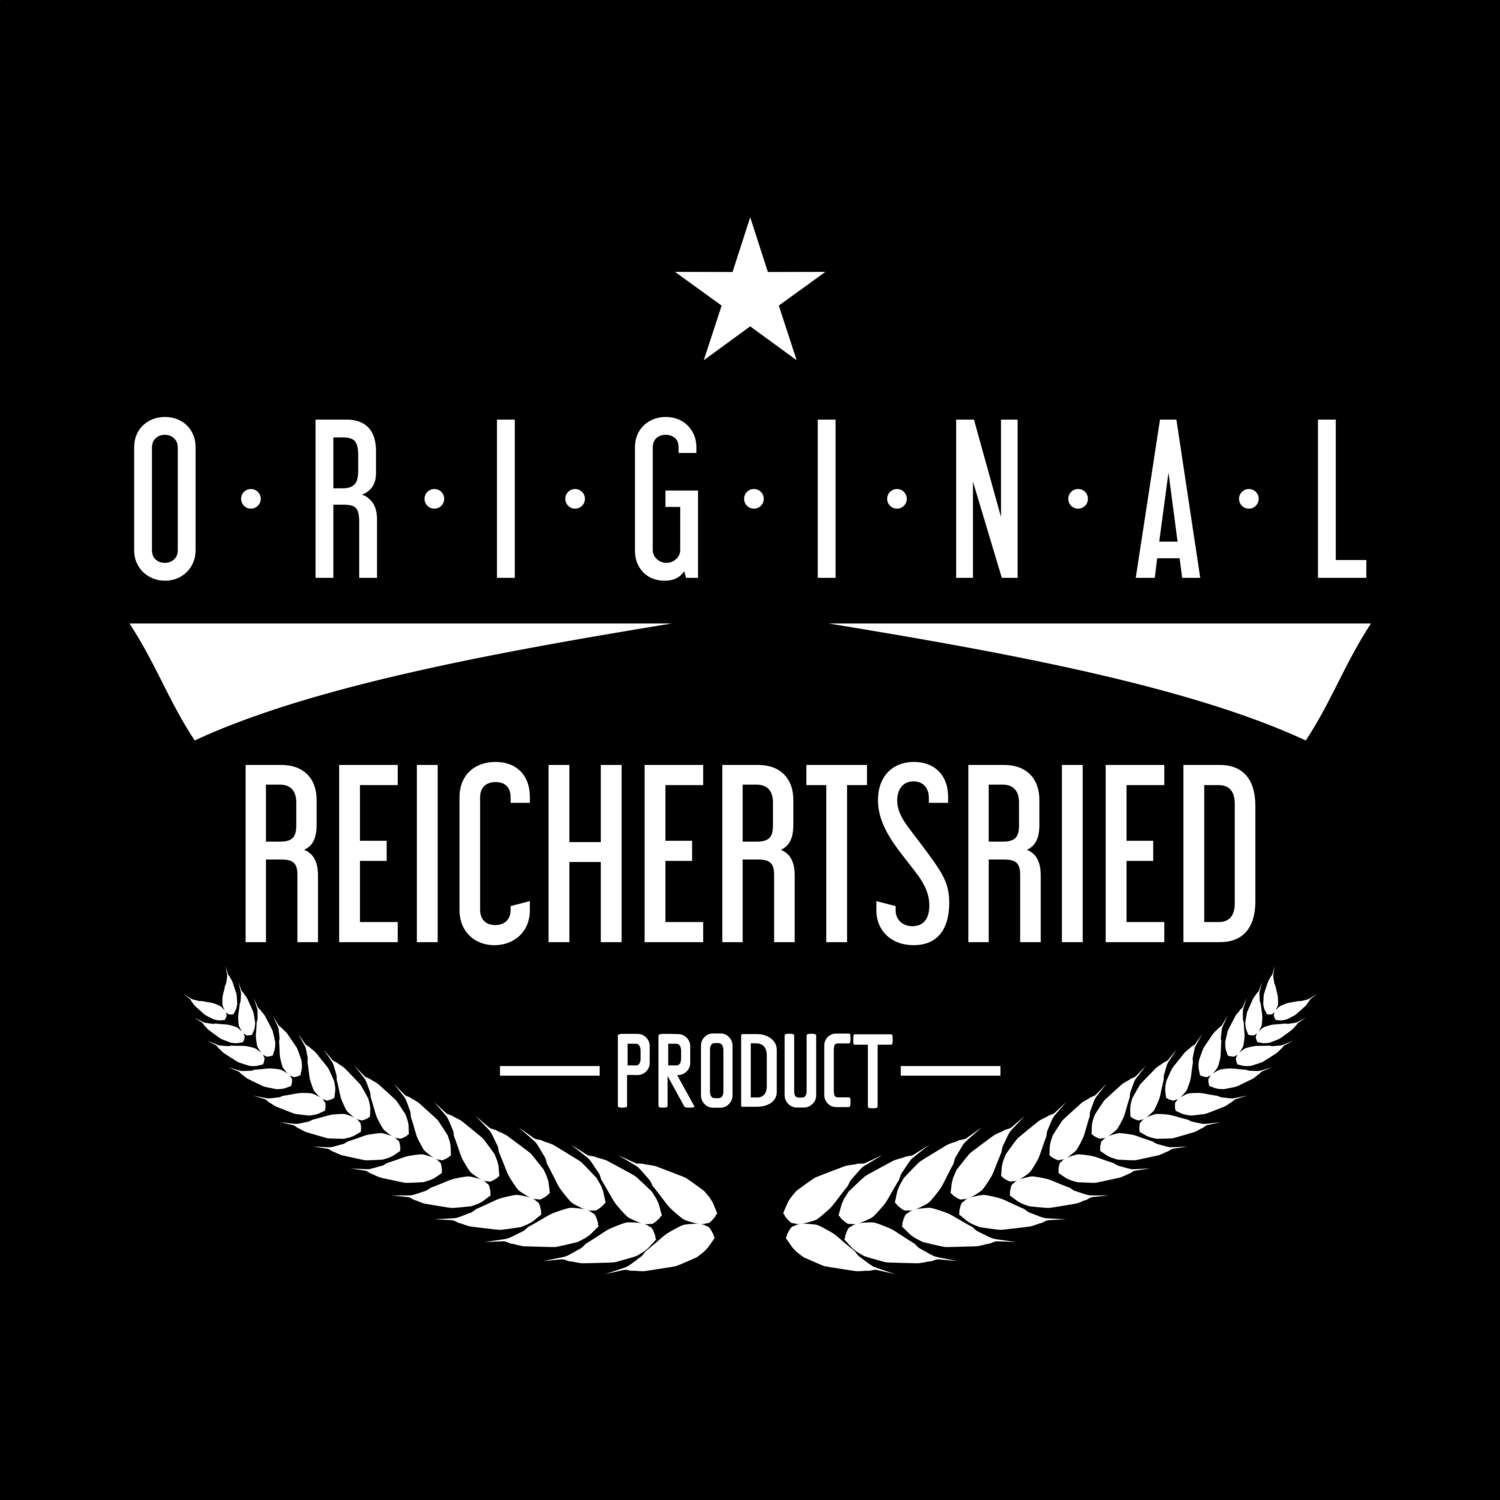 Reichertsried T-Shirt »Original Product«